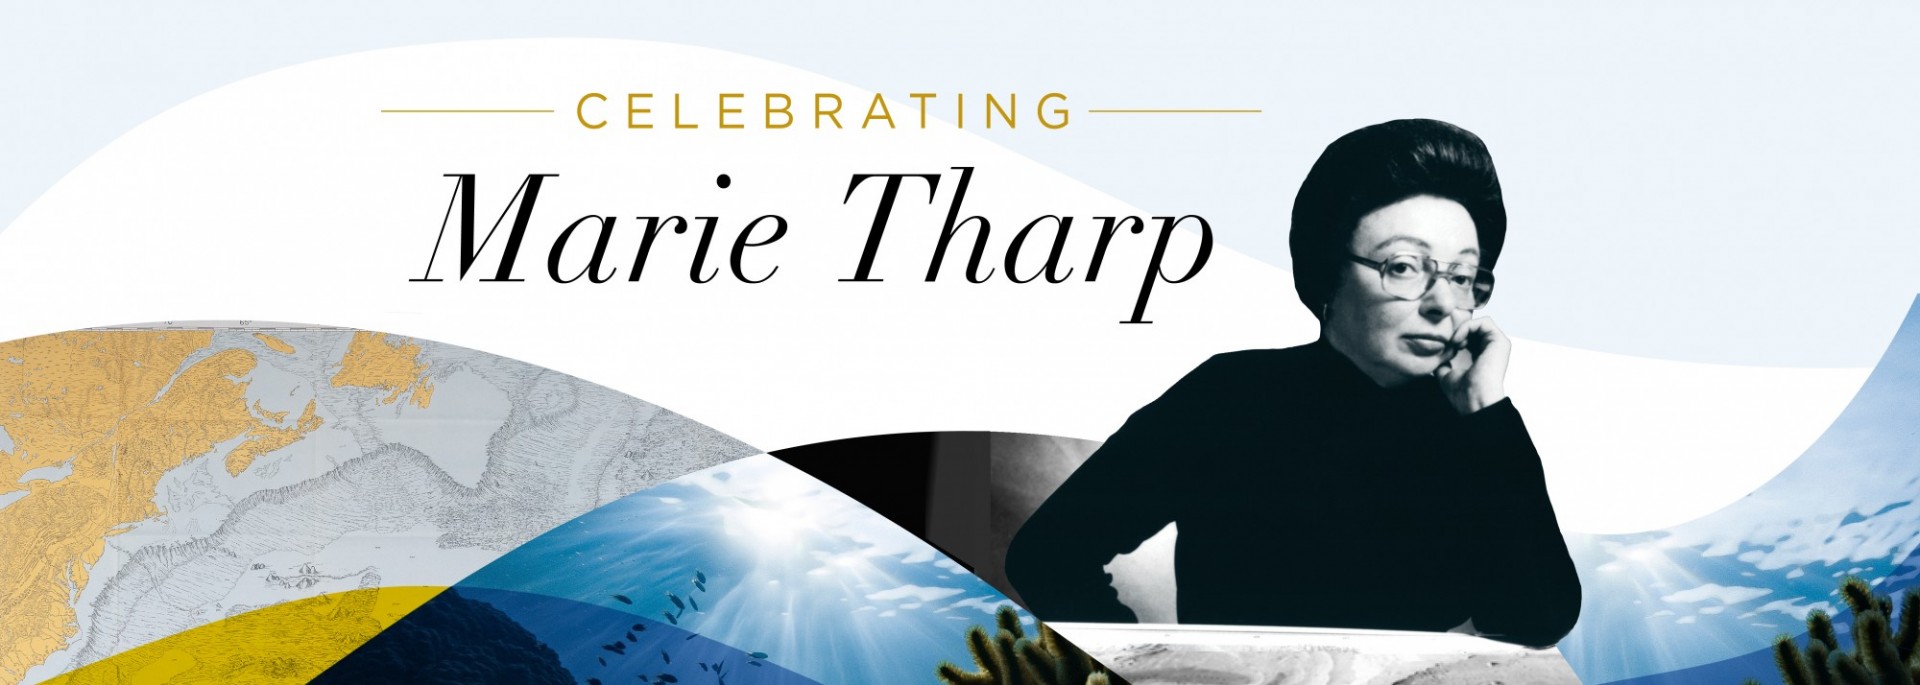 Celebrating Marie Tharp